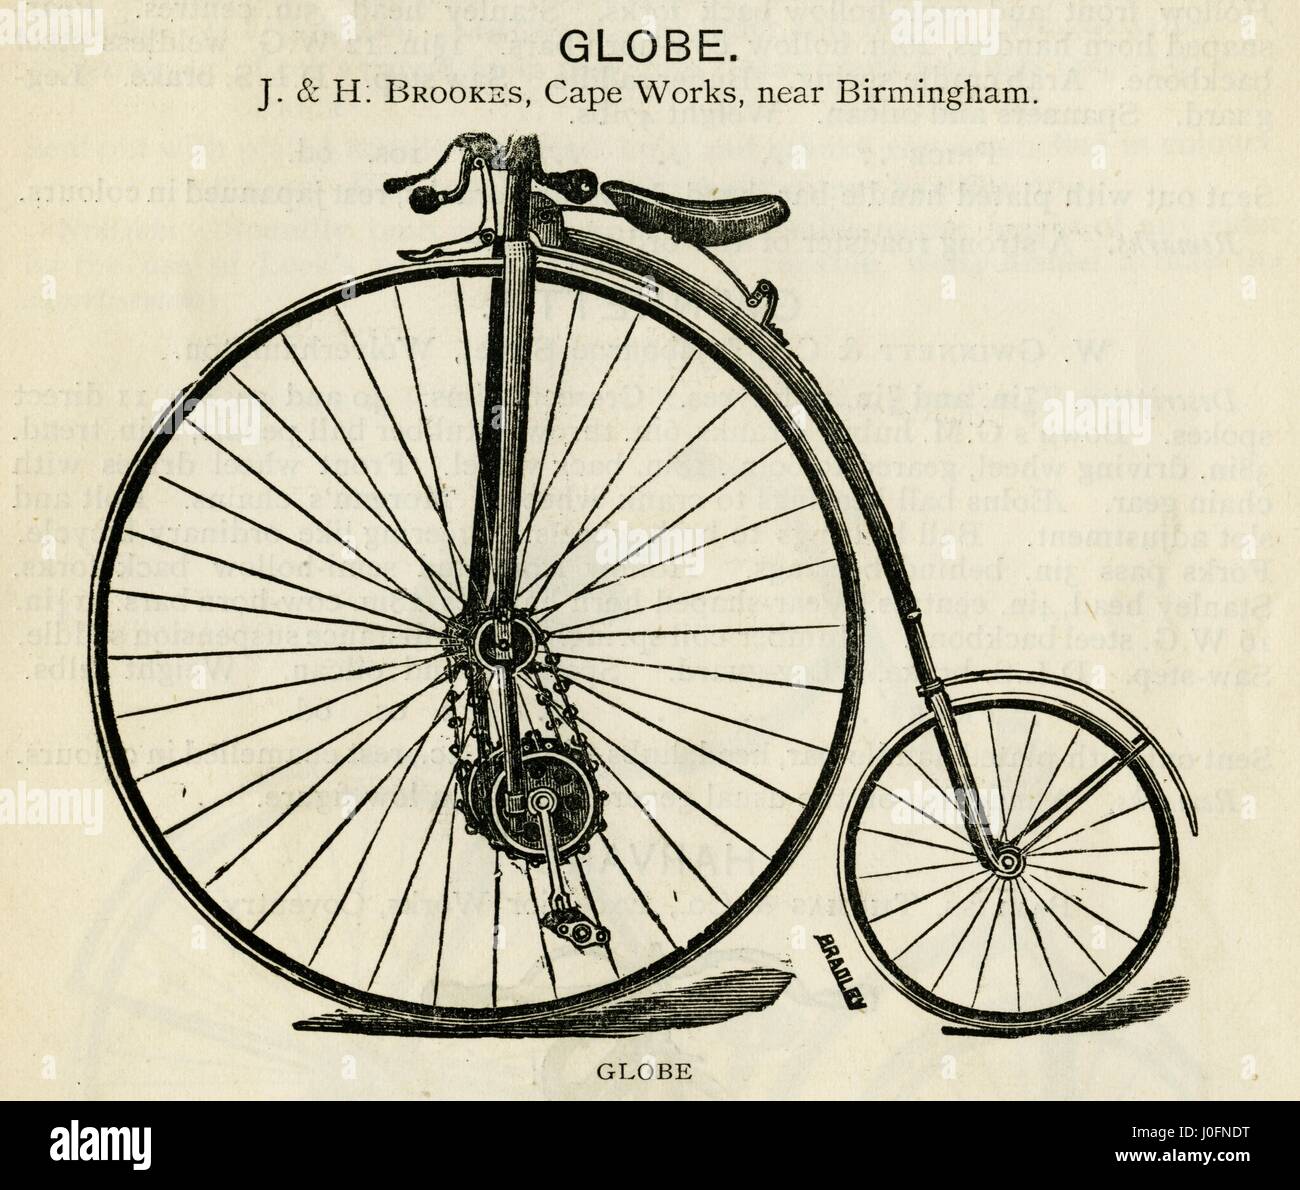 Il Globo bicicletta da J e H Brookes vicino a Birmingham Foto Stock